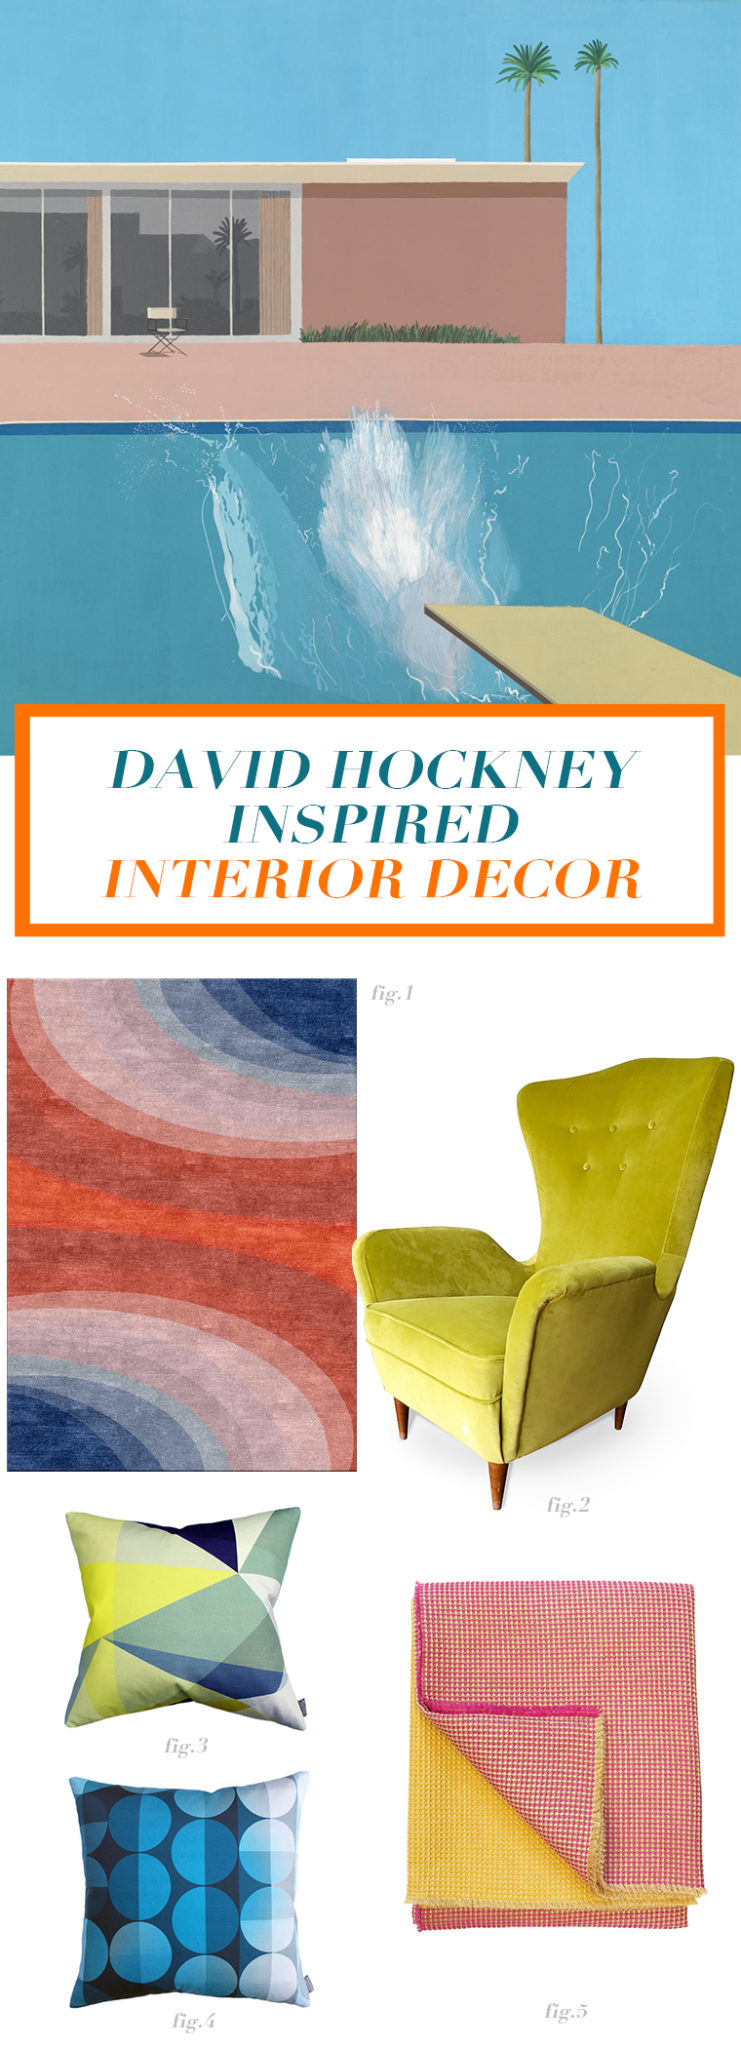 David Hockney inspired interior design